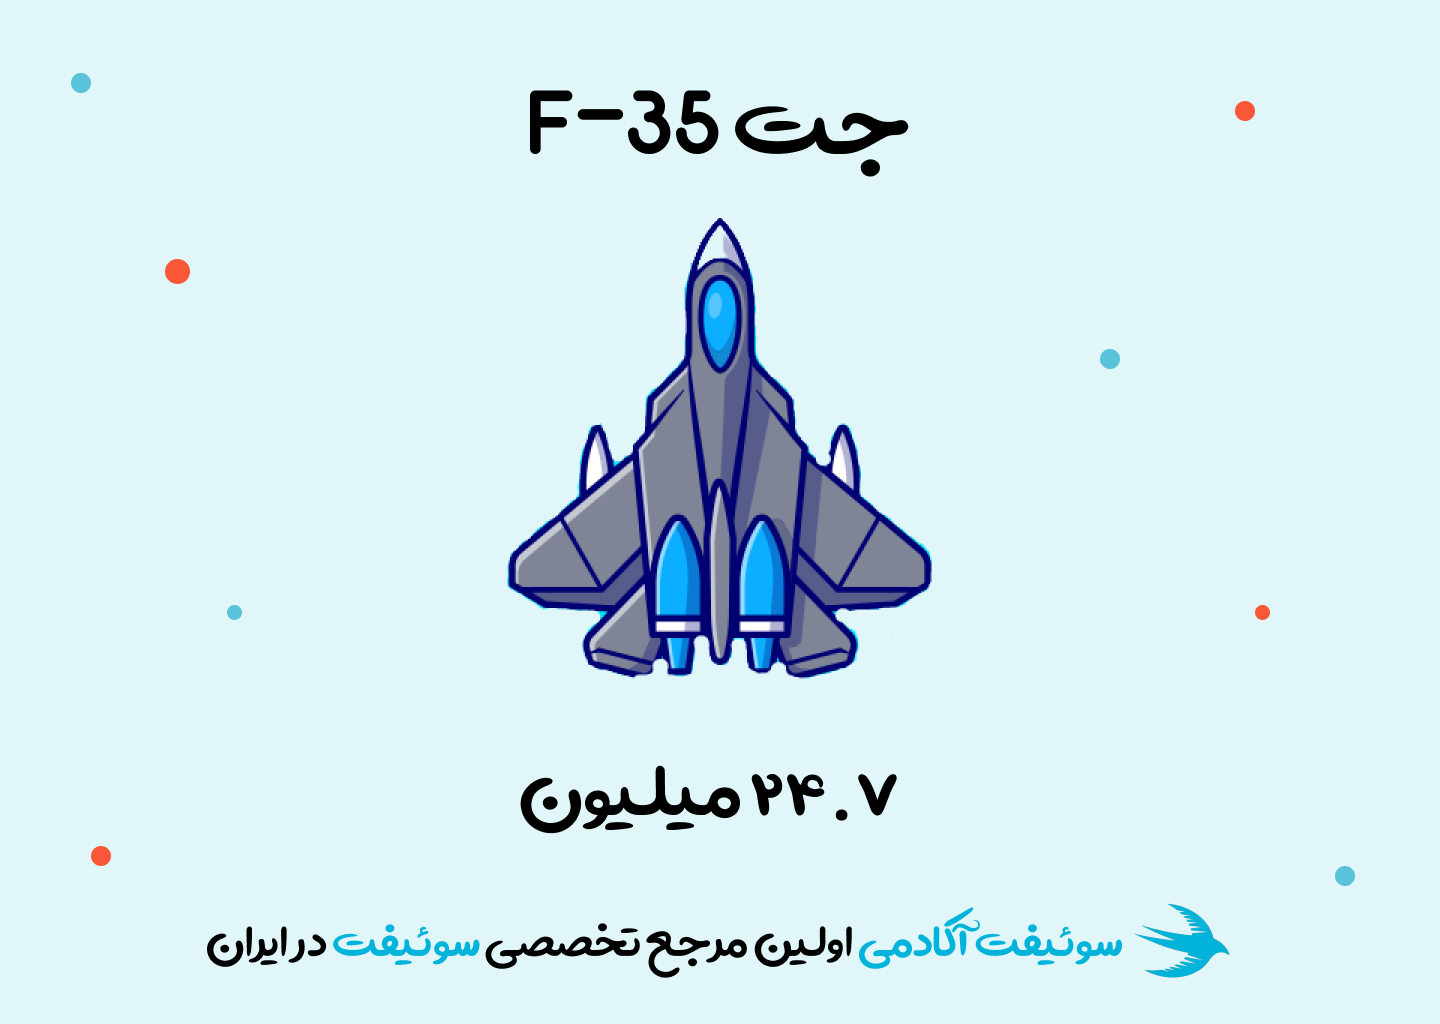 تعداد خطوط کد جت F-35 24.7 میلیون است.